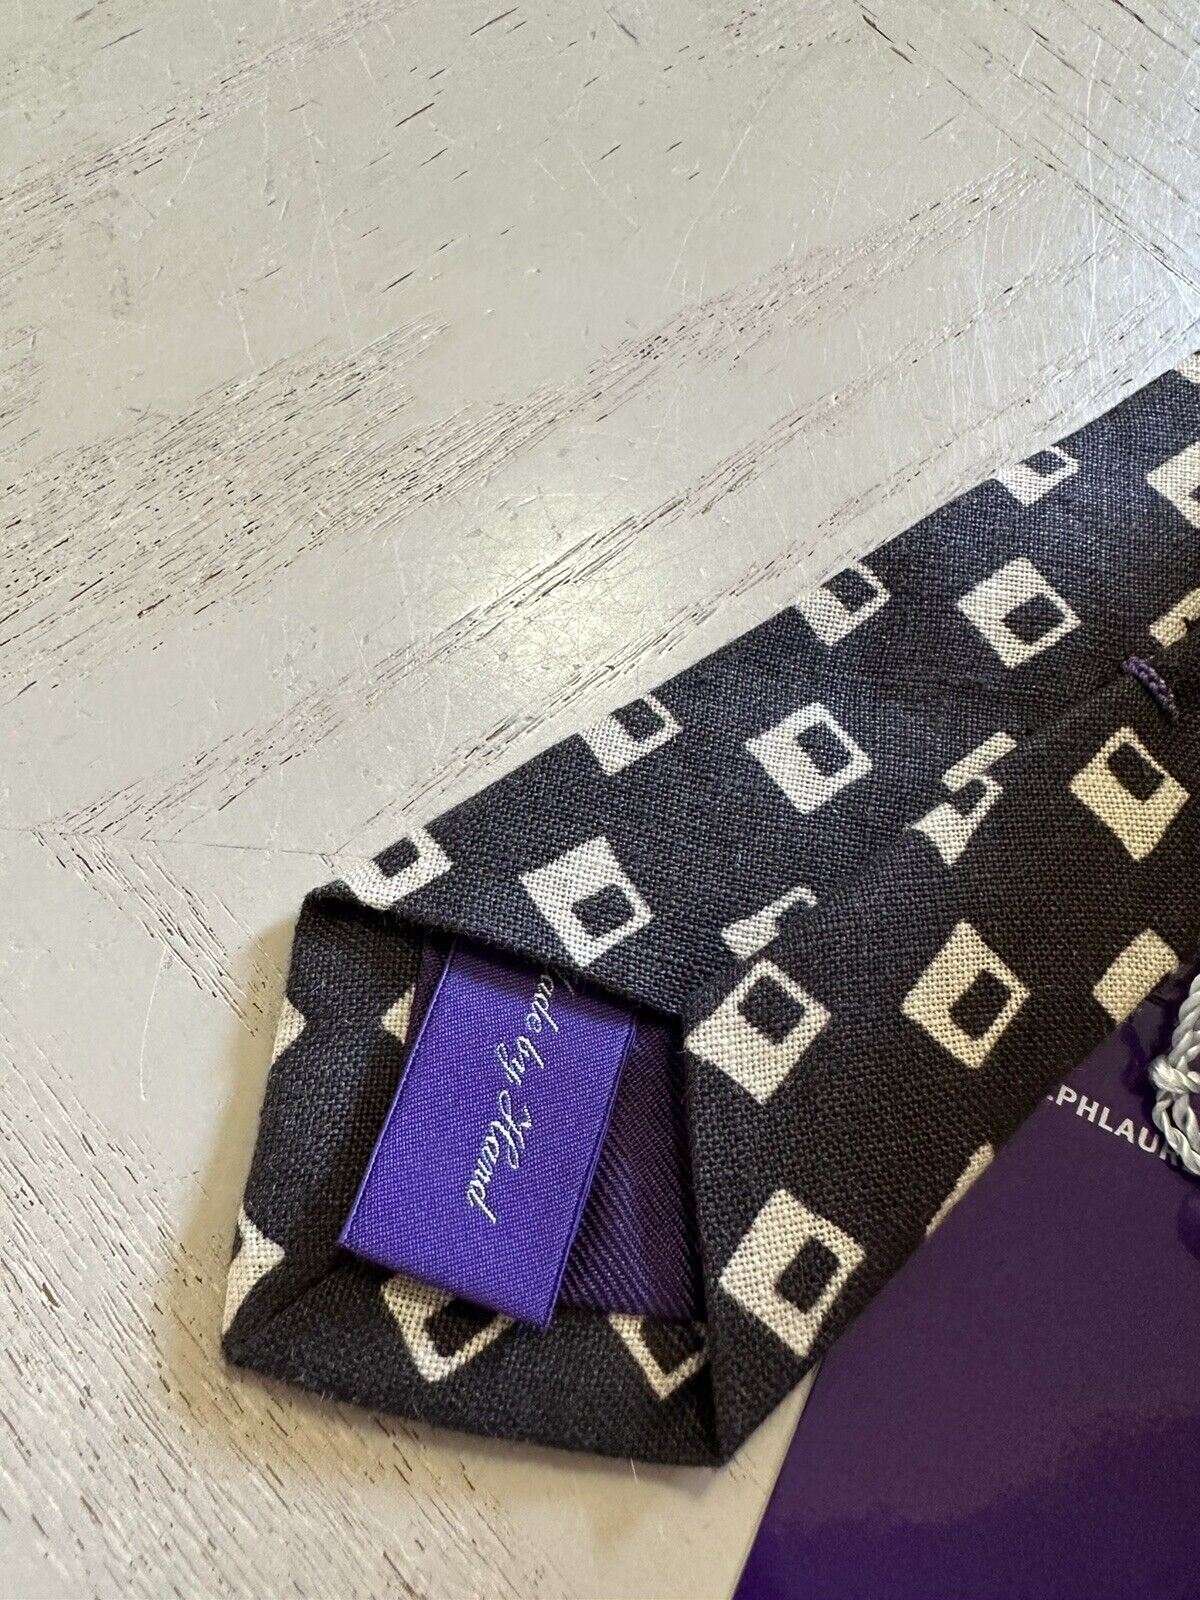 Новый коричневый галстук Ralph Lauren Purple Label Last за 225 долларов, сделанный вручную в Италии